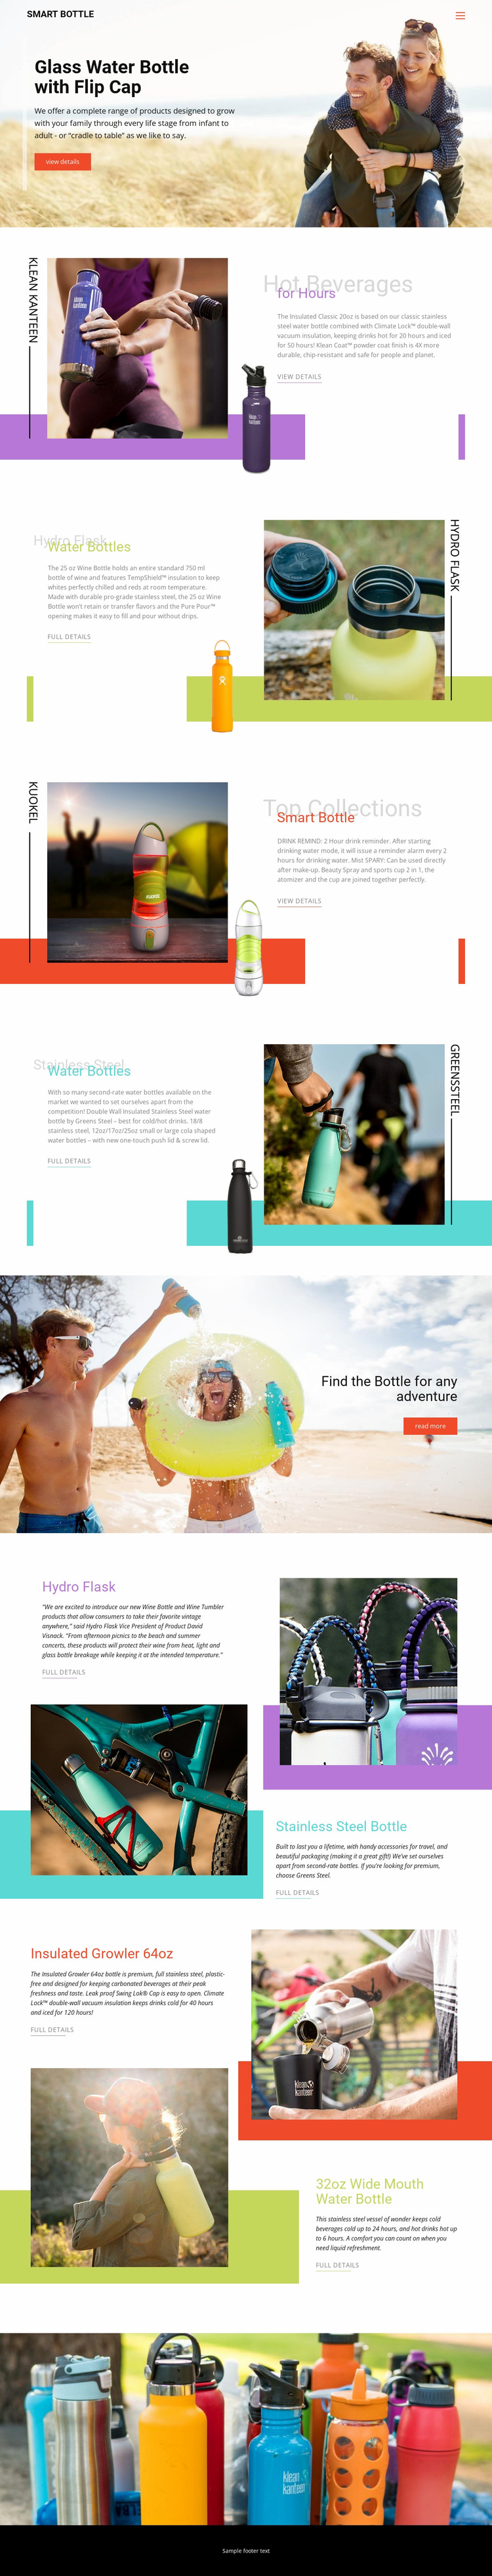 Water Bottles Website Design